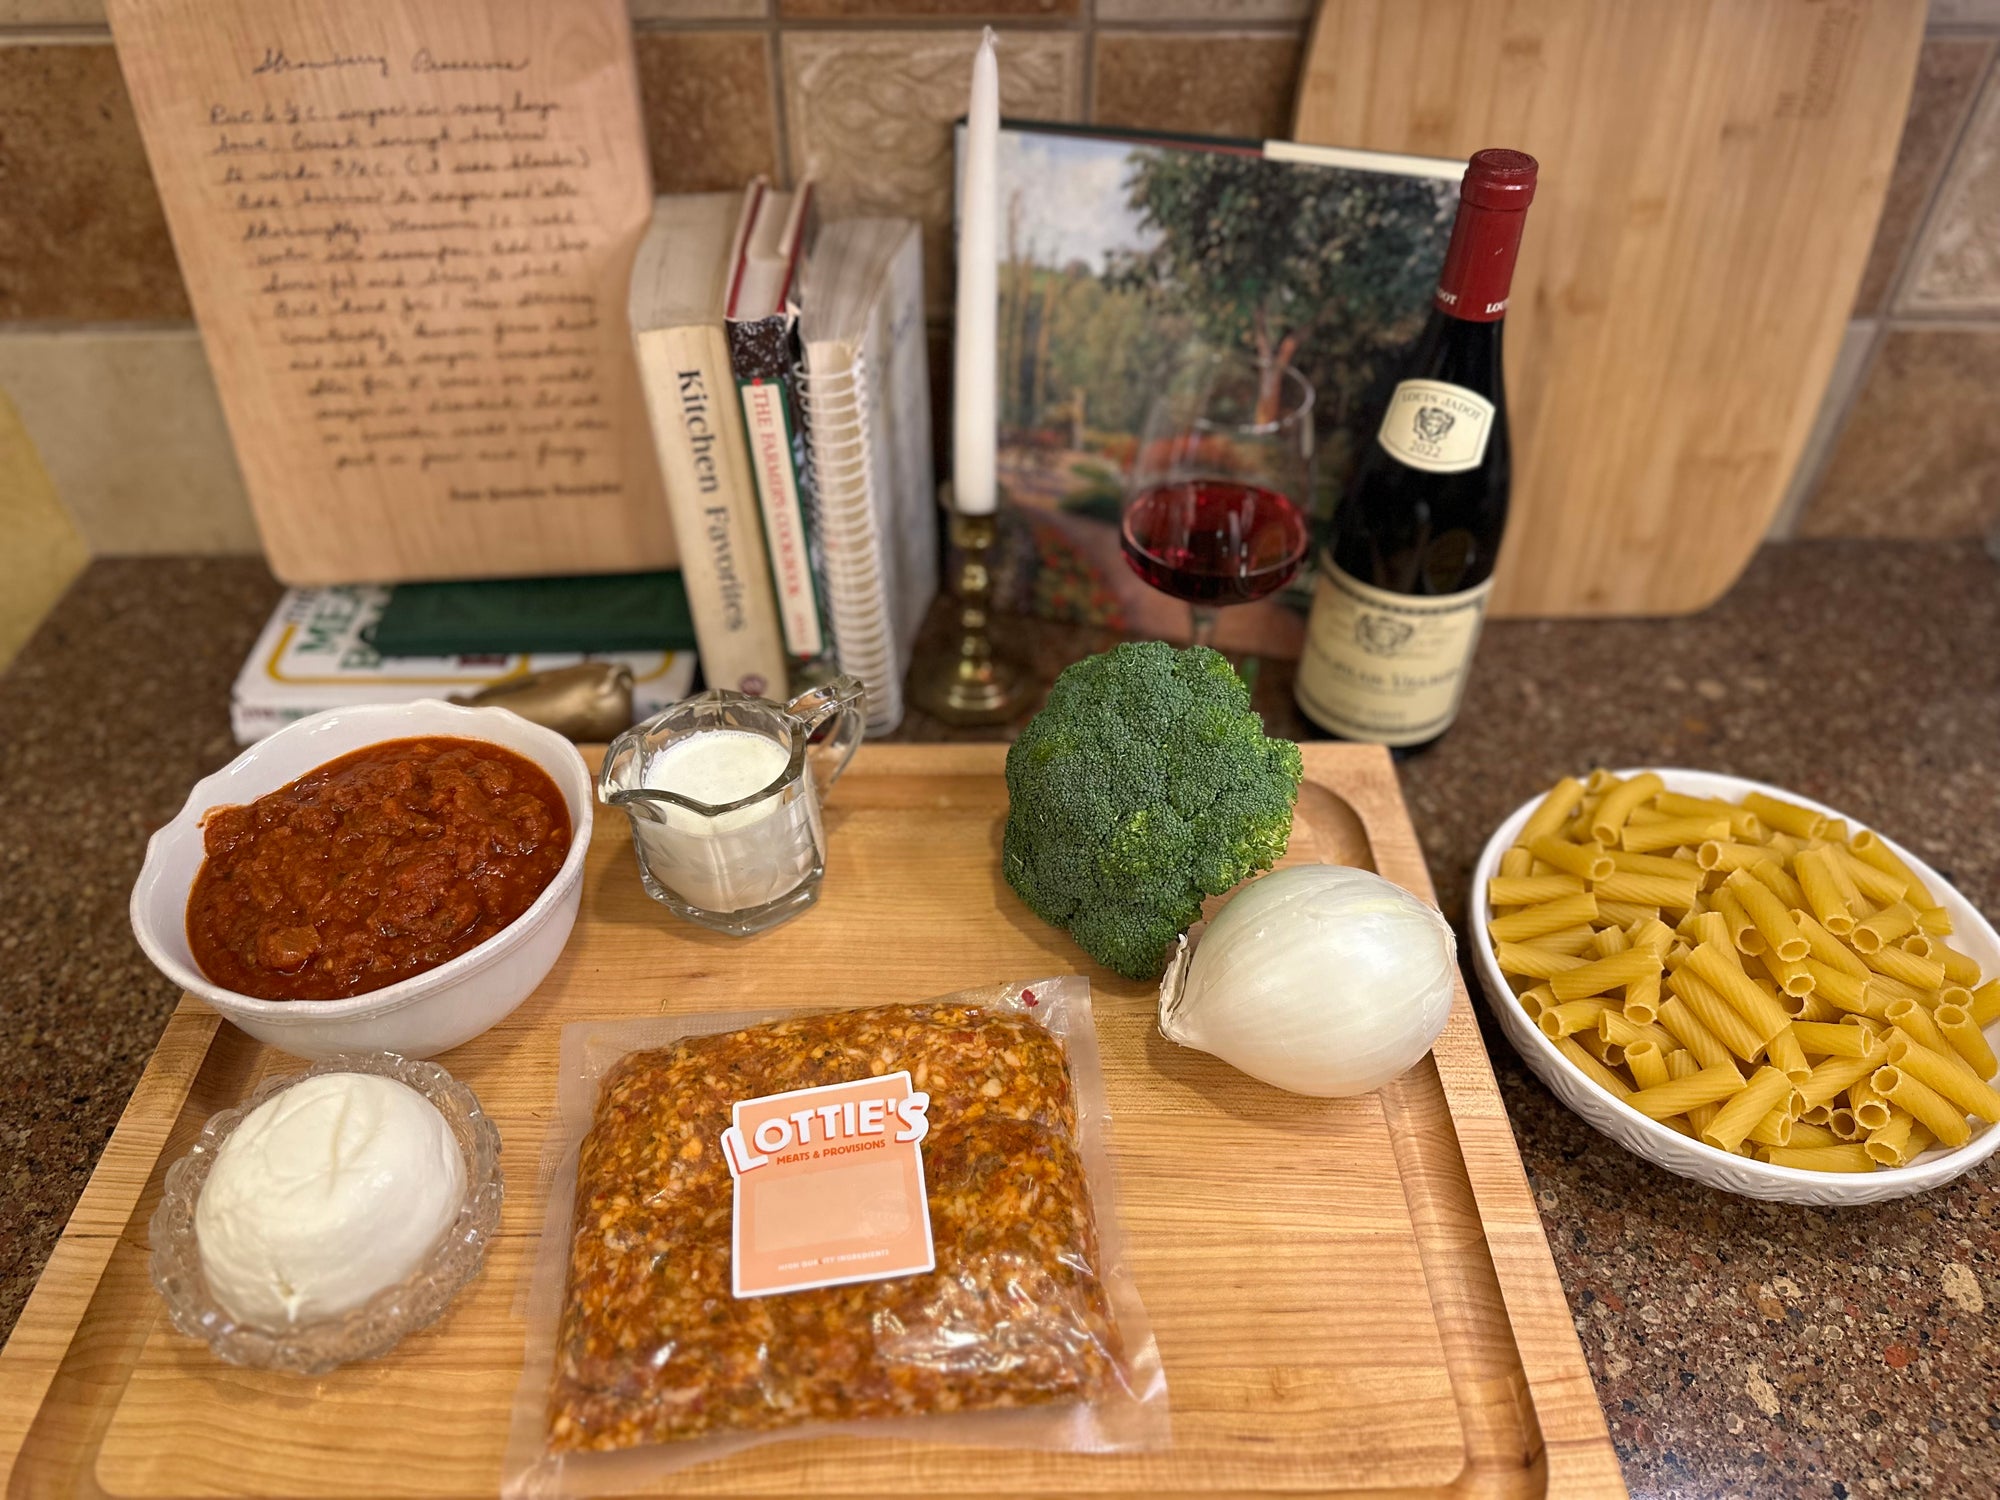 Image of pasta ingredients